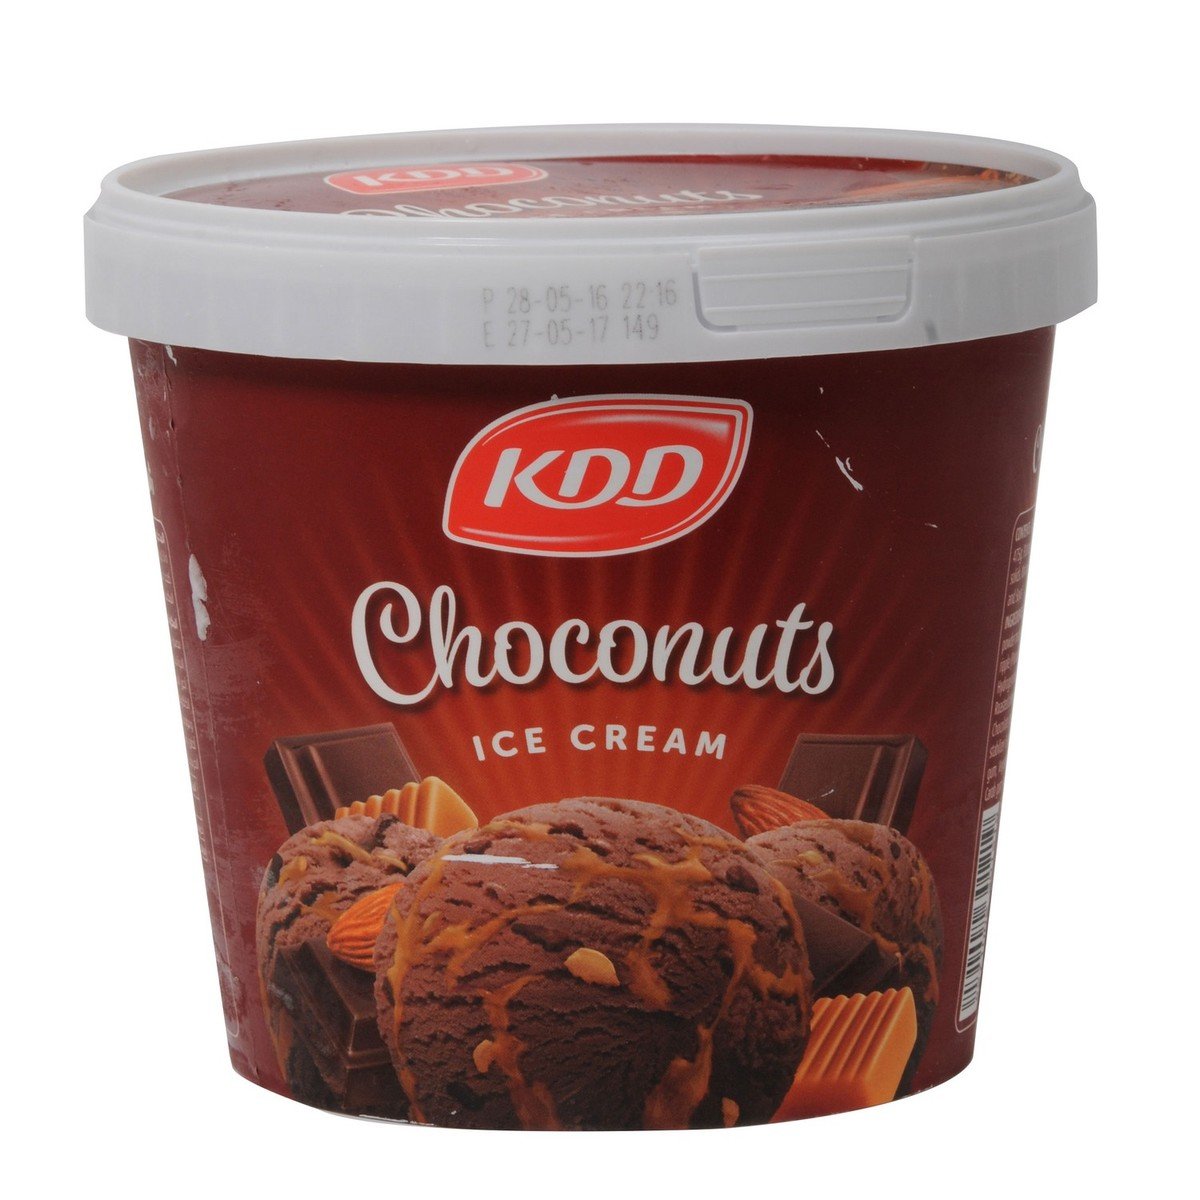 KDD Choconuts Ice Cream 1Litre